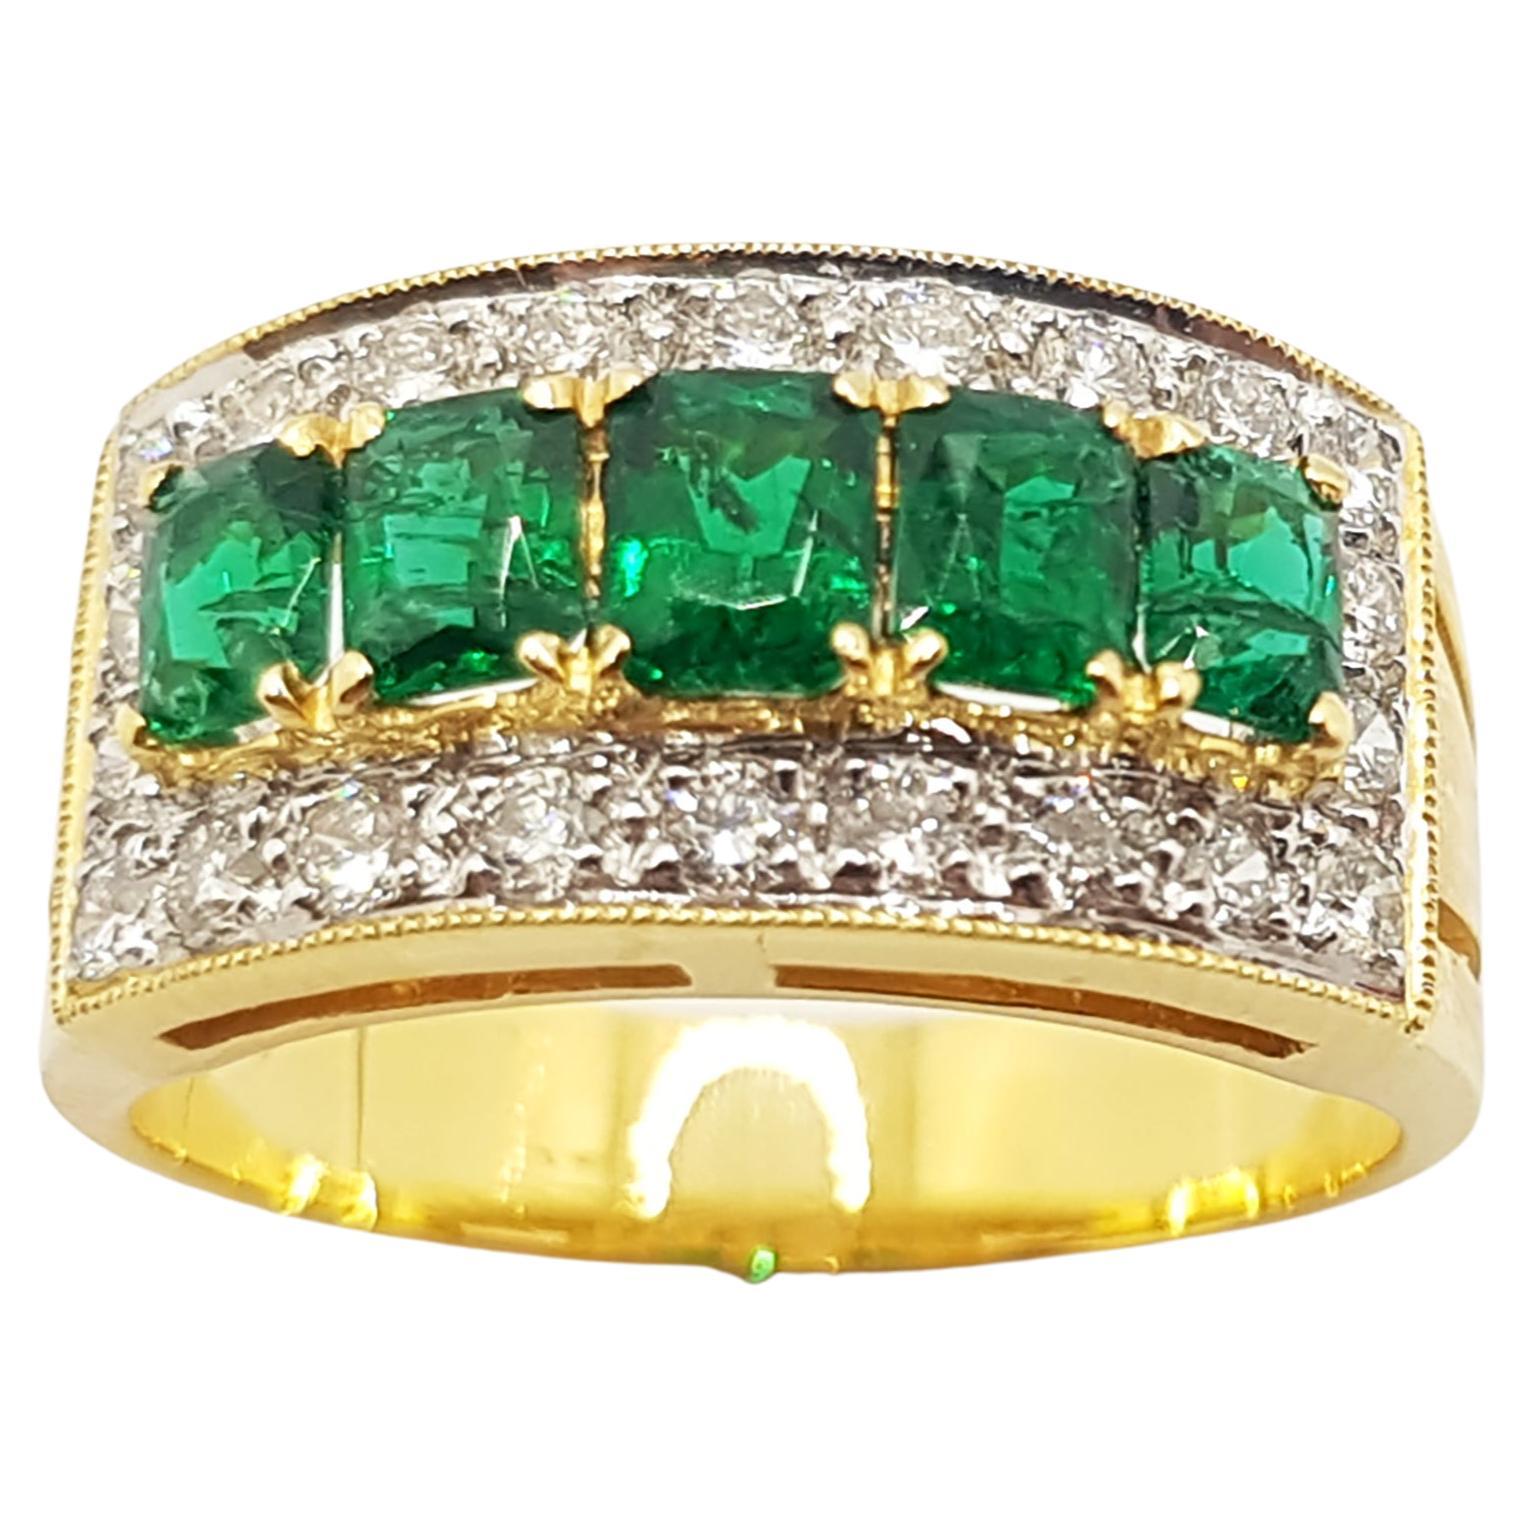 Smaragd mit Diamant-Diamant  Ring in 18 Karat Gold Fassungen gefasst